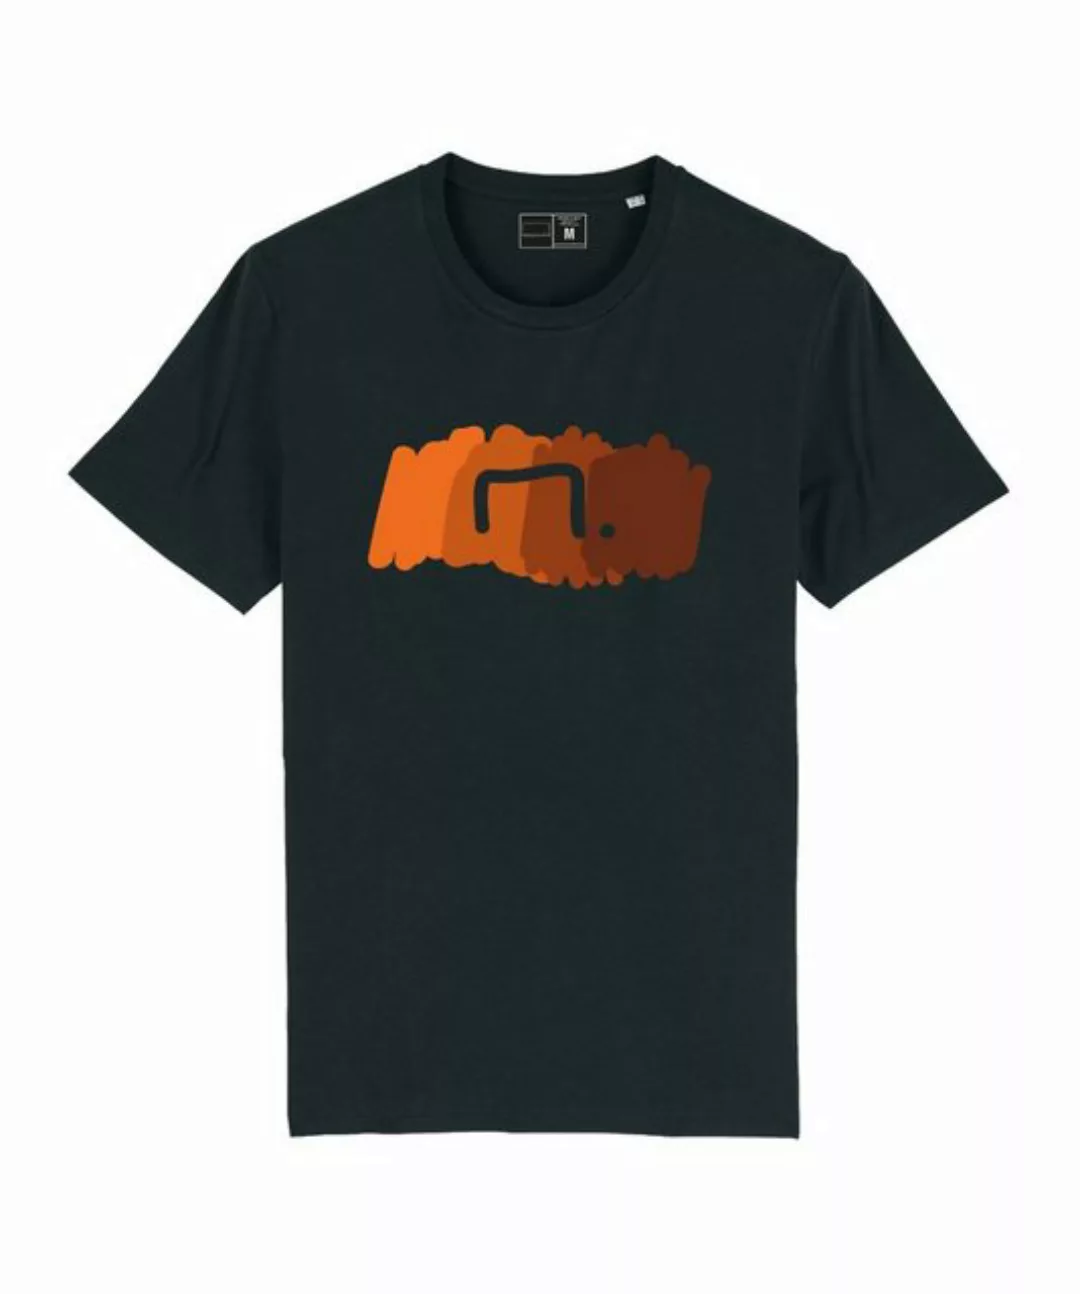 Bolzplatzkind T-Shirt "Free" T-Shirt Nachhaltiges Produkt günstig online kaufen